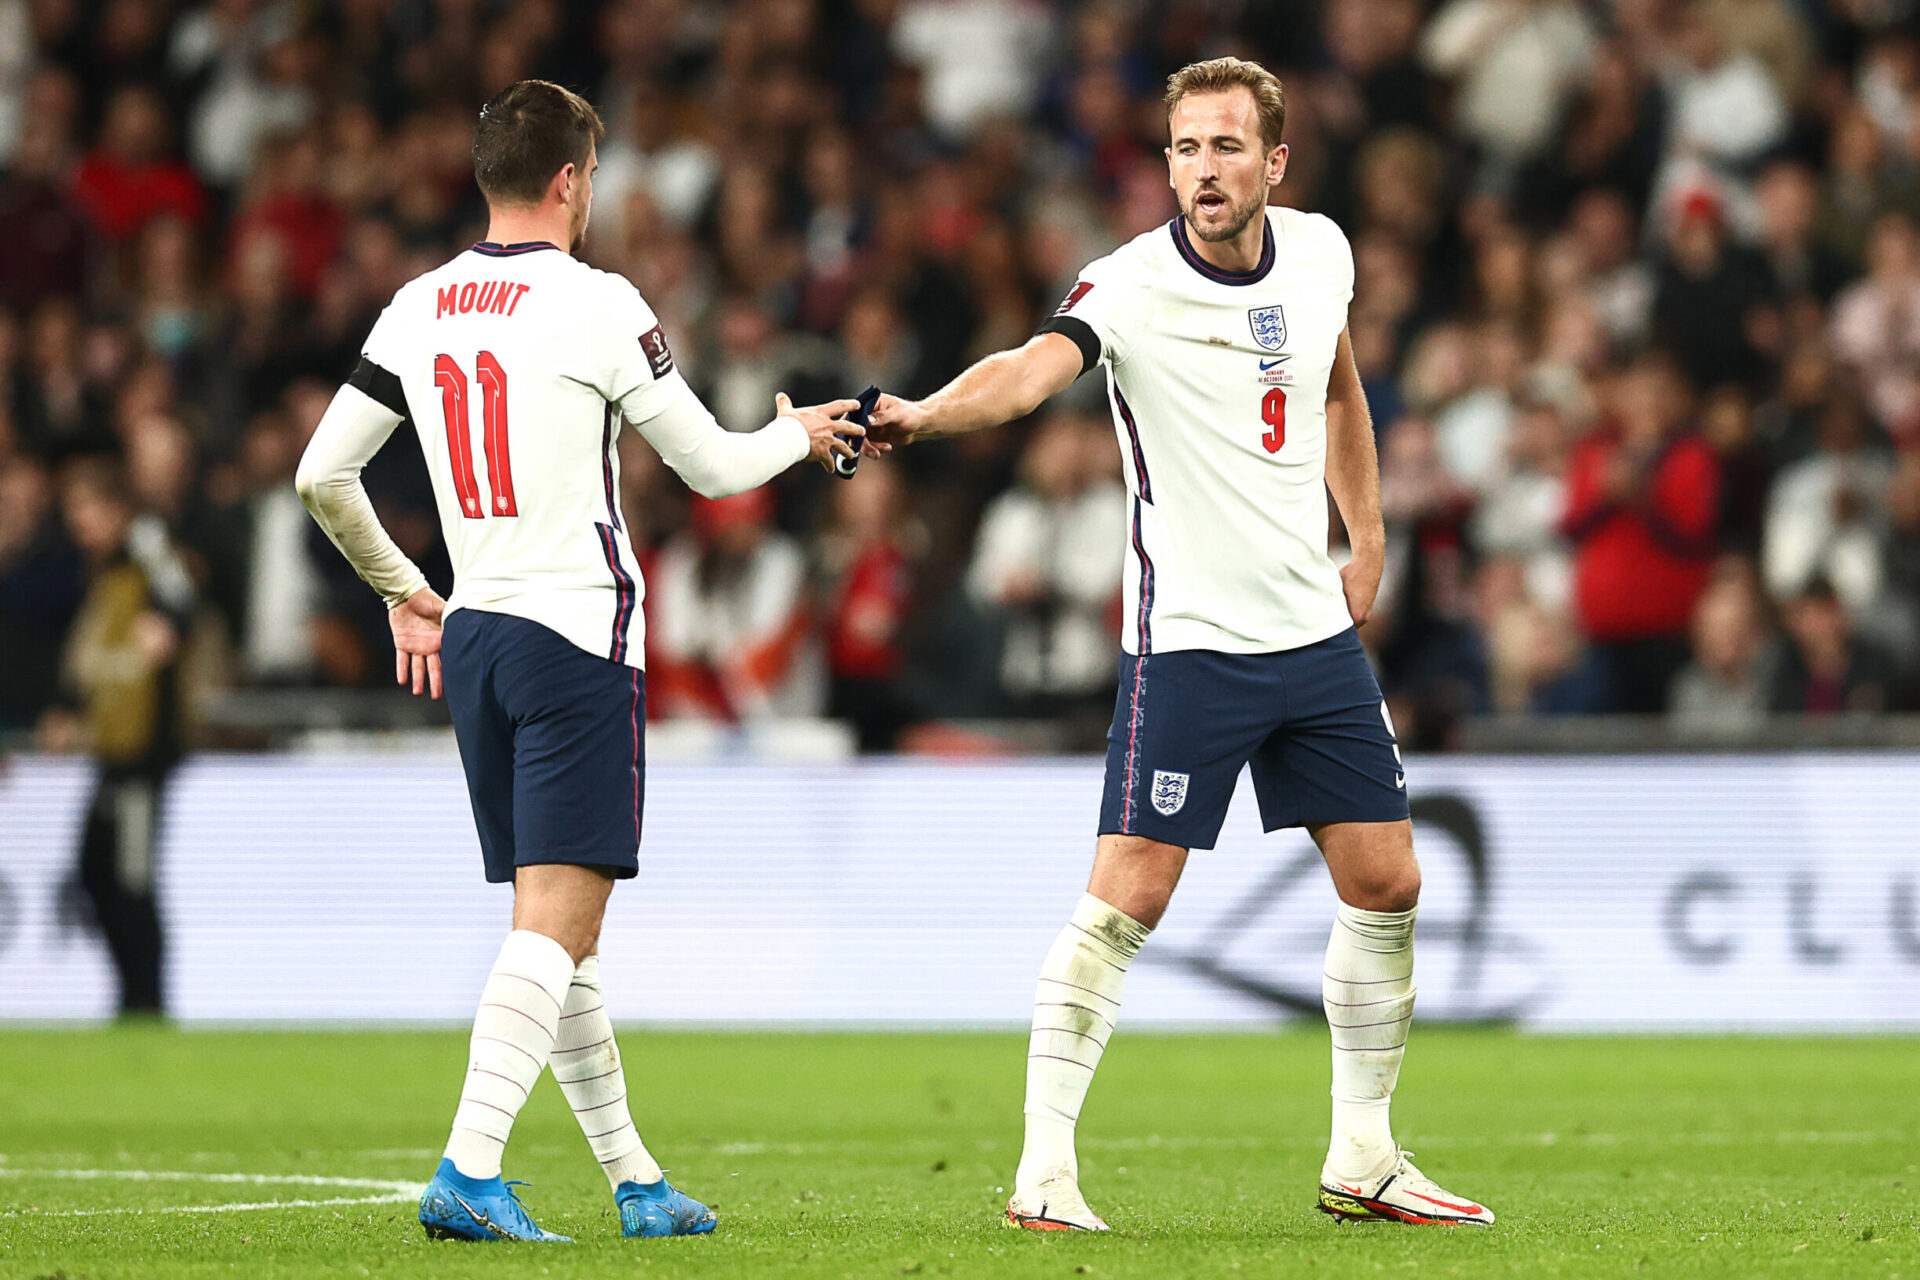 L'Angleterre de Harry Kane pourrait décrocher son ticket pour la Coupe du monde 2022 dans un stade de Wembley vide (iconsport)